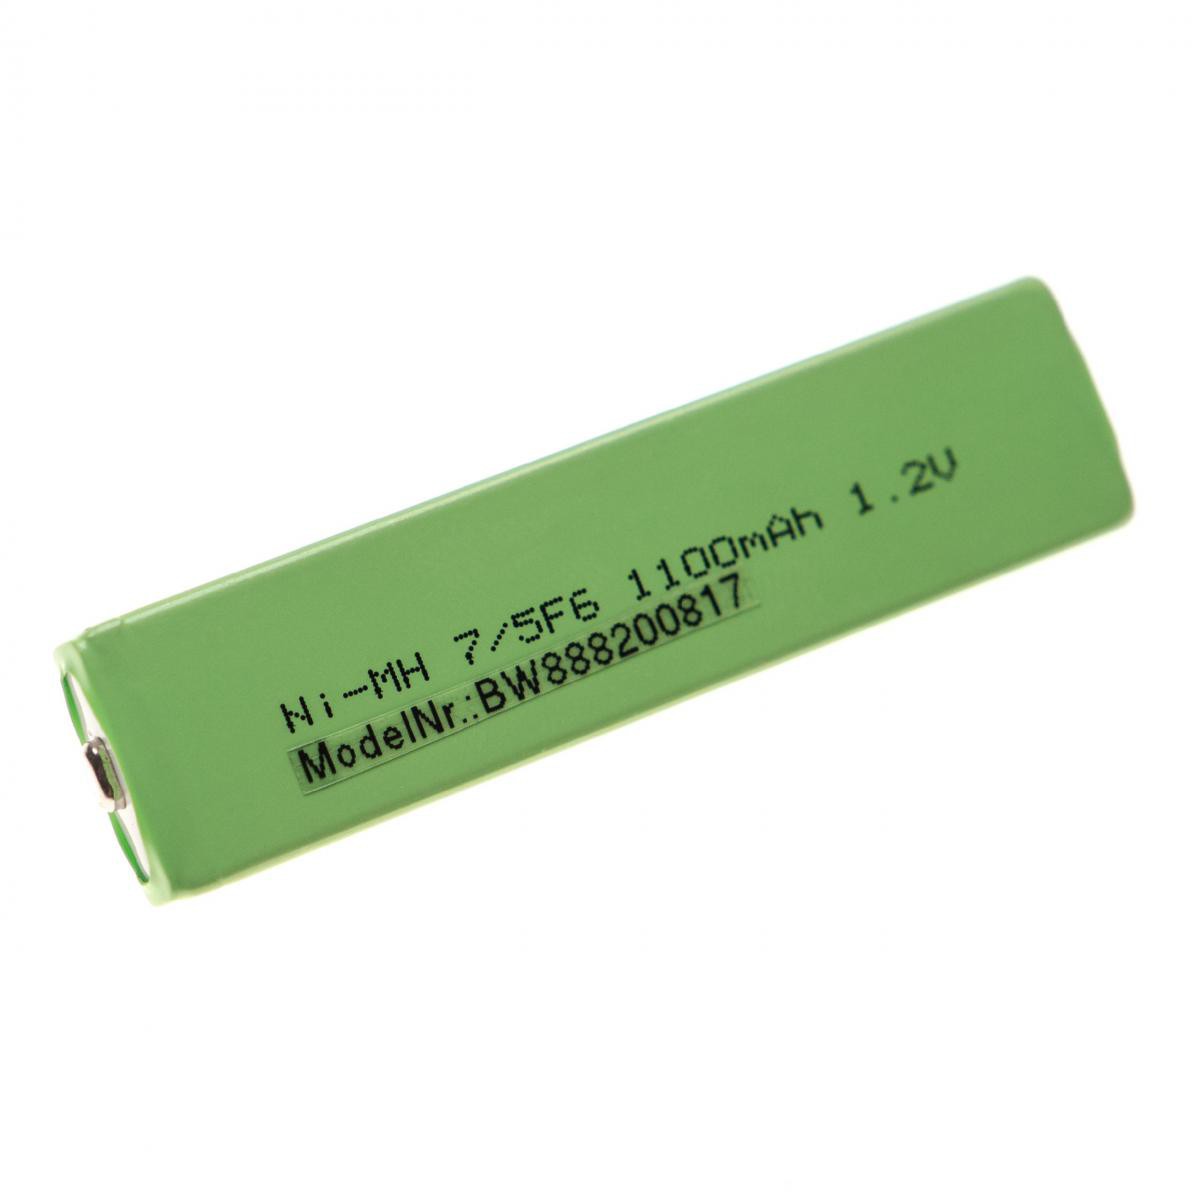 Vhbw - vhbw Batterie 7/5F6, remplace pour Sony NC-4WM, NC-5WM, NC-6WM, NH-10WM, NH-14WM, NH-14WM(A), bouton Top, 1100mAh, 1,2V, NiMH - Batteries électroniques